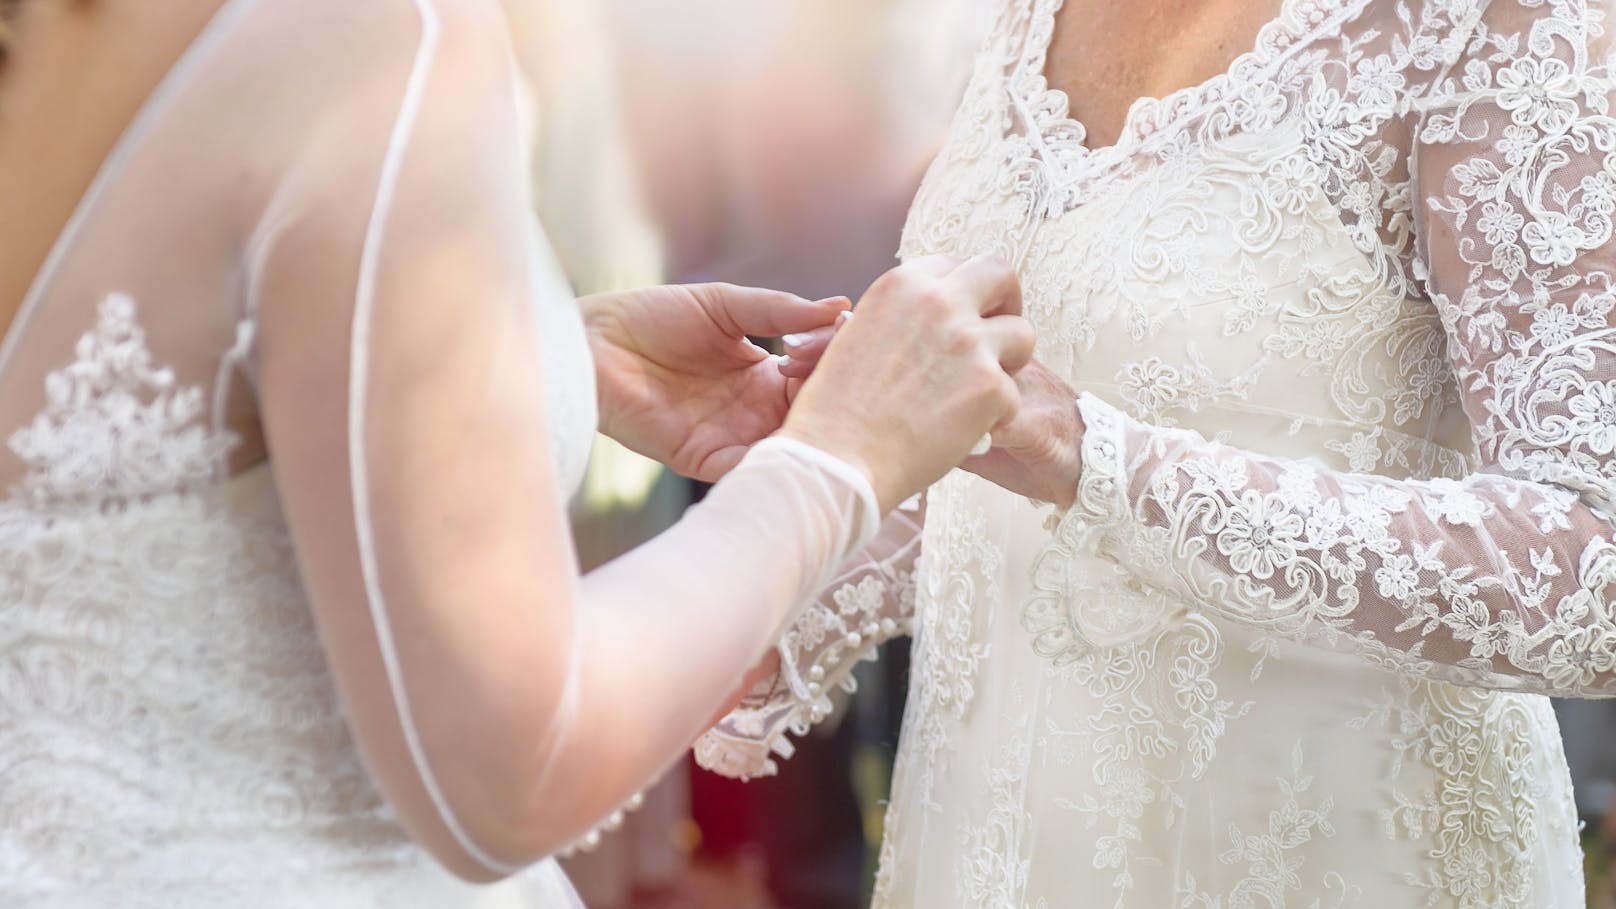 Fotograf lehnt lesbisches Hochzeitspaar ab